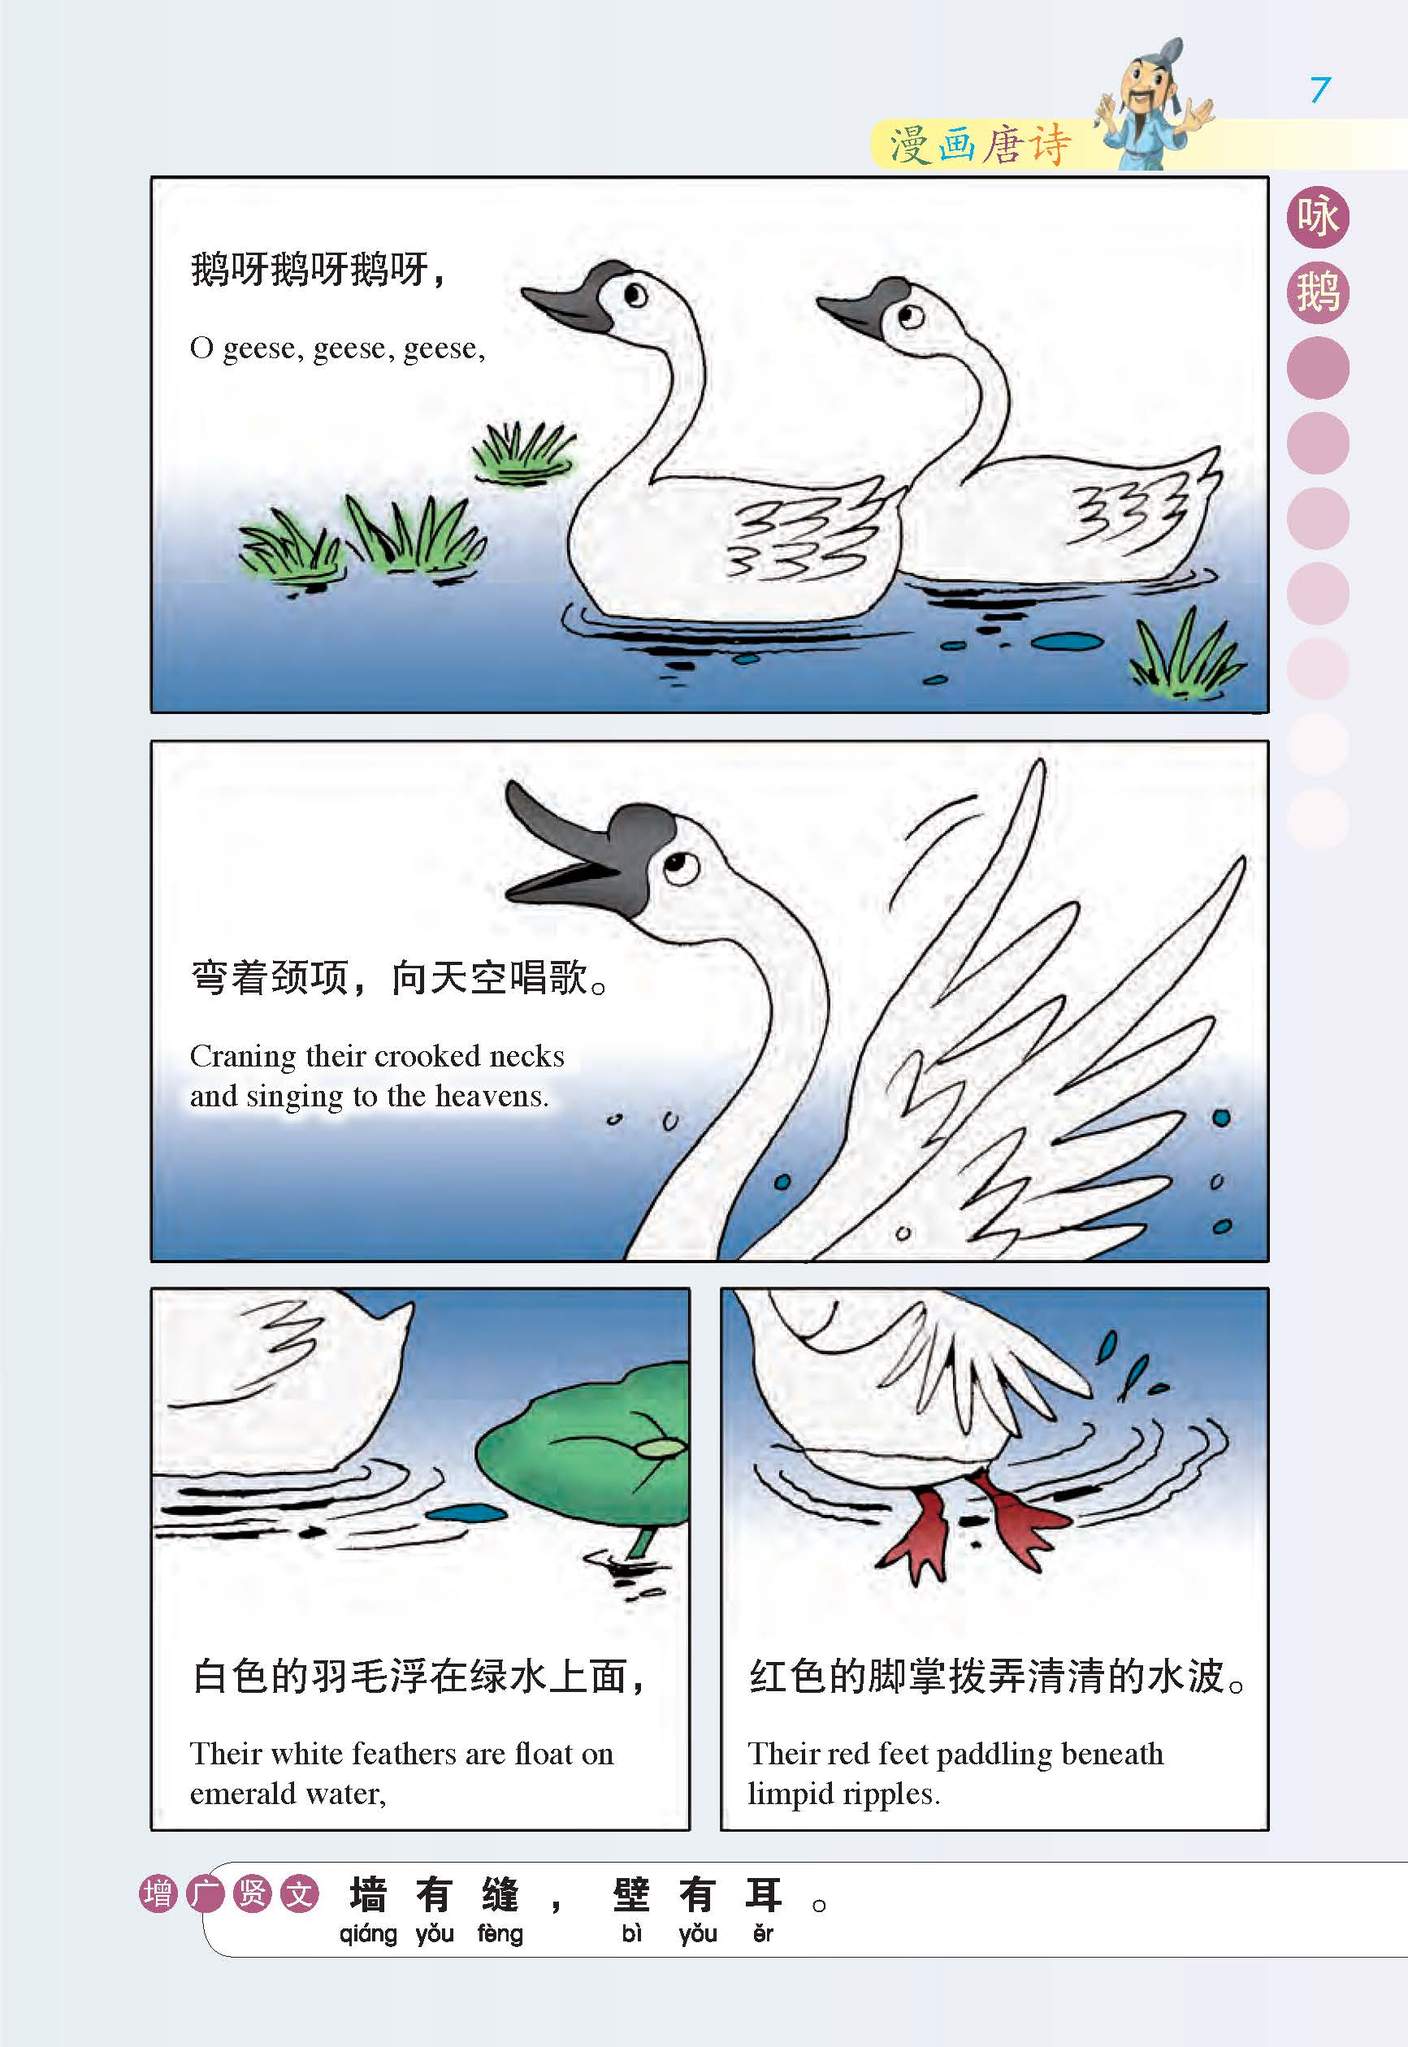 漫画唐诗 Tang Poetry In Pictures (Set of 3)